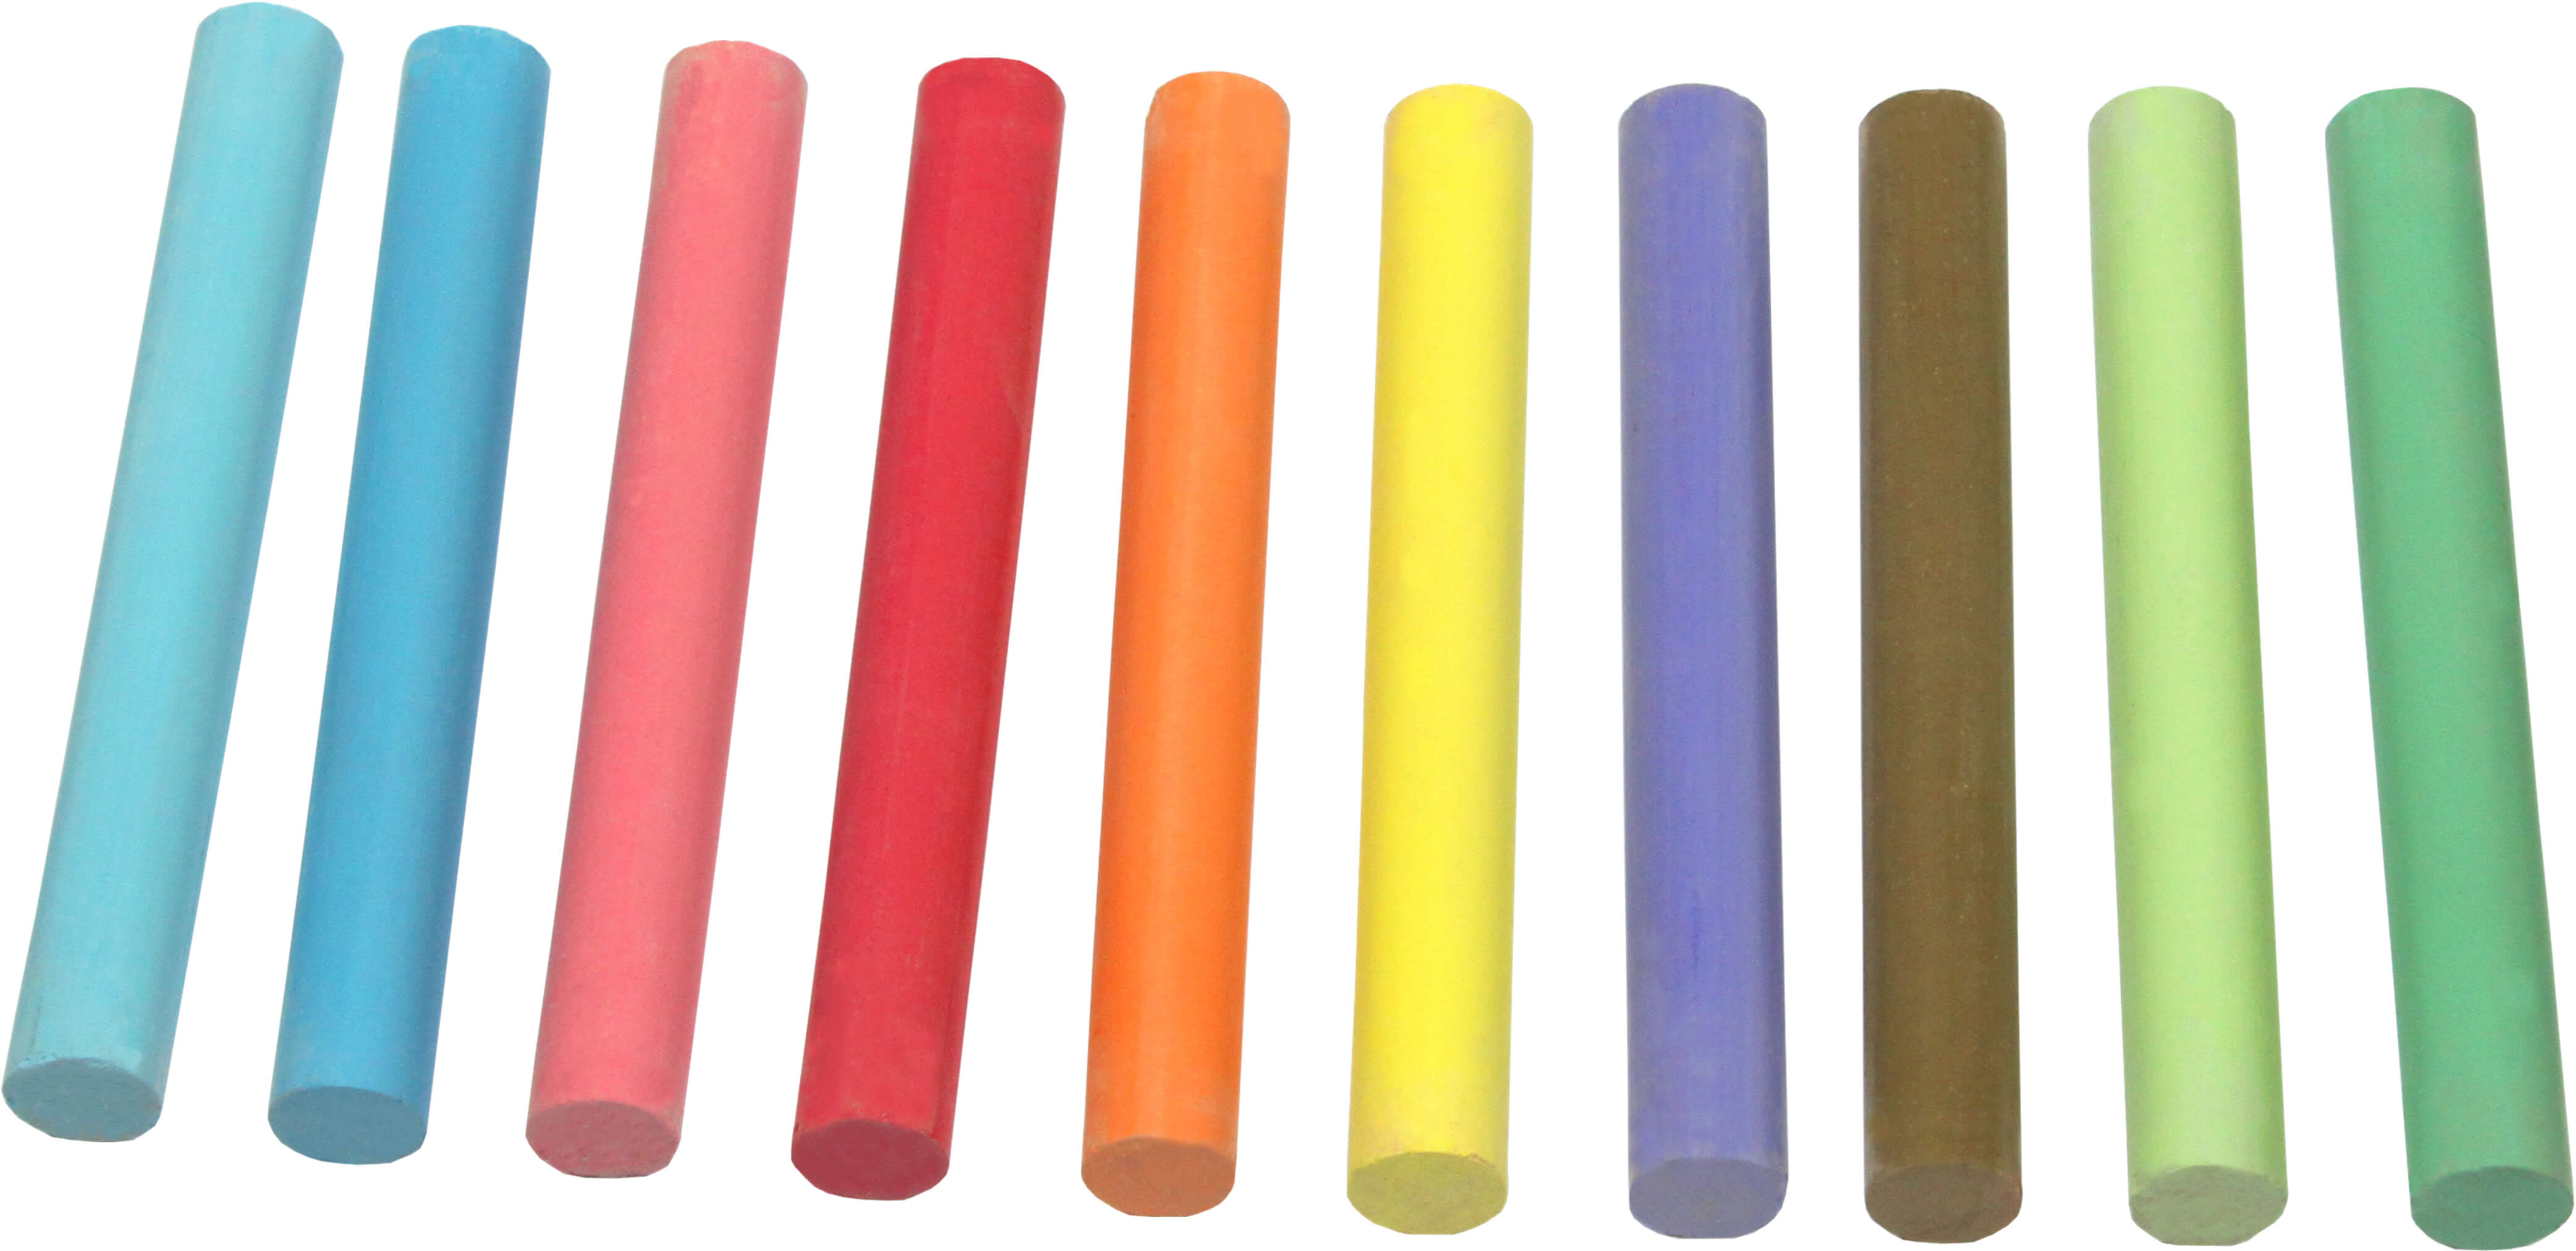 Schulkreide farbig sortiert rund 80 x 10 mm lieferbar | Bestnr. RC1190